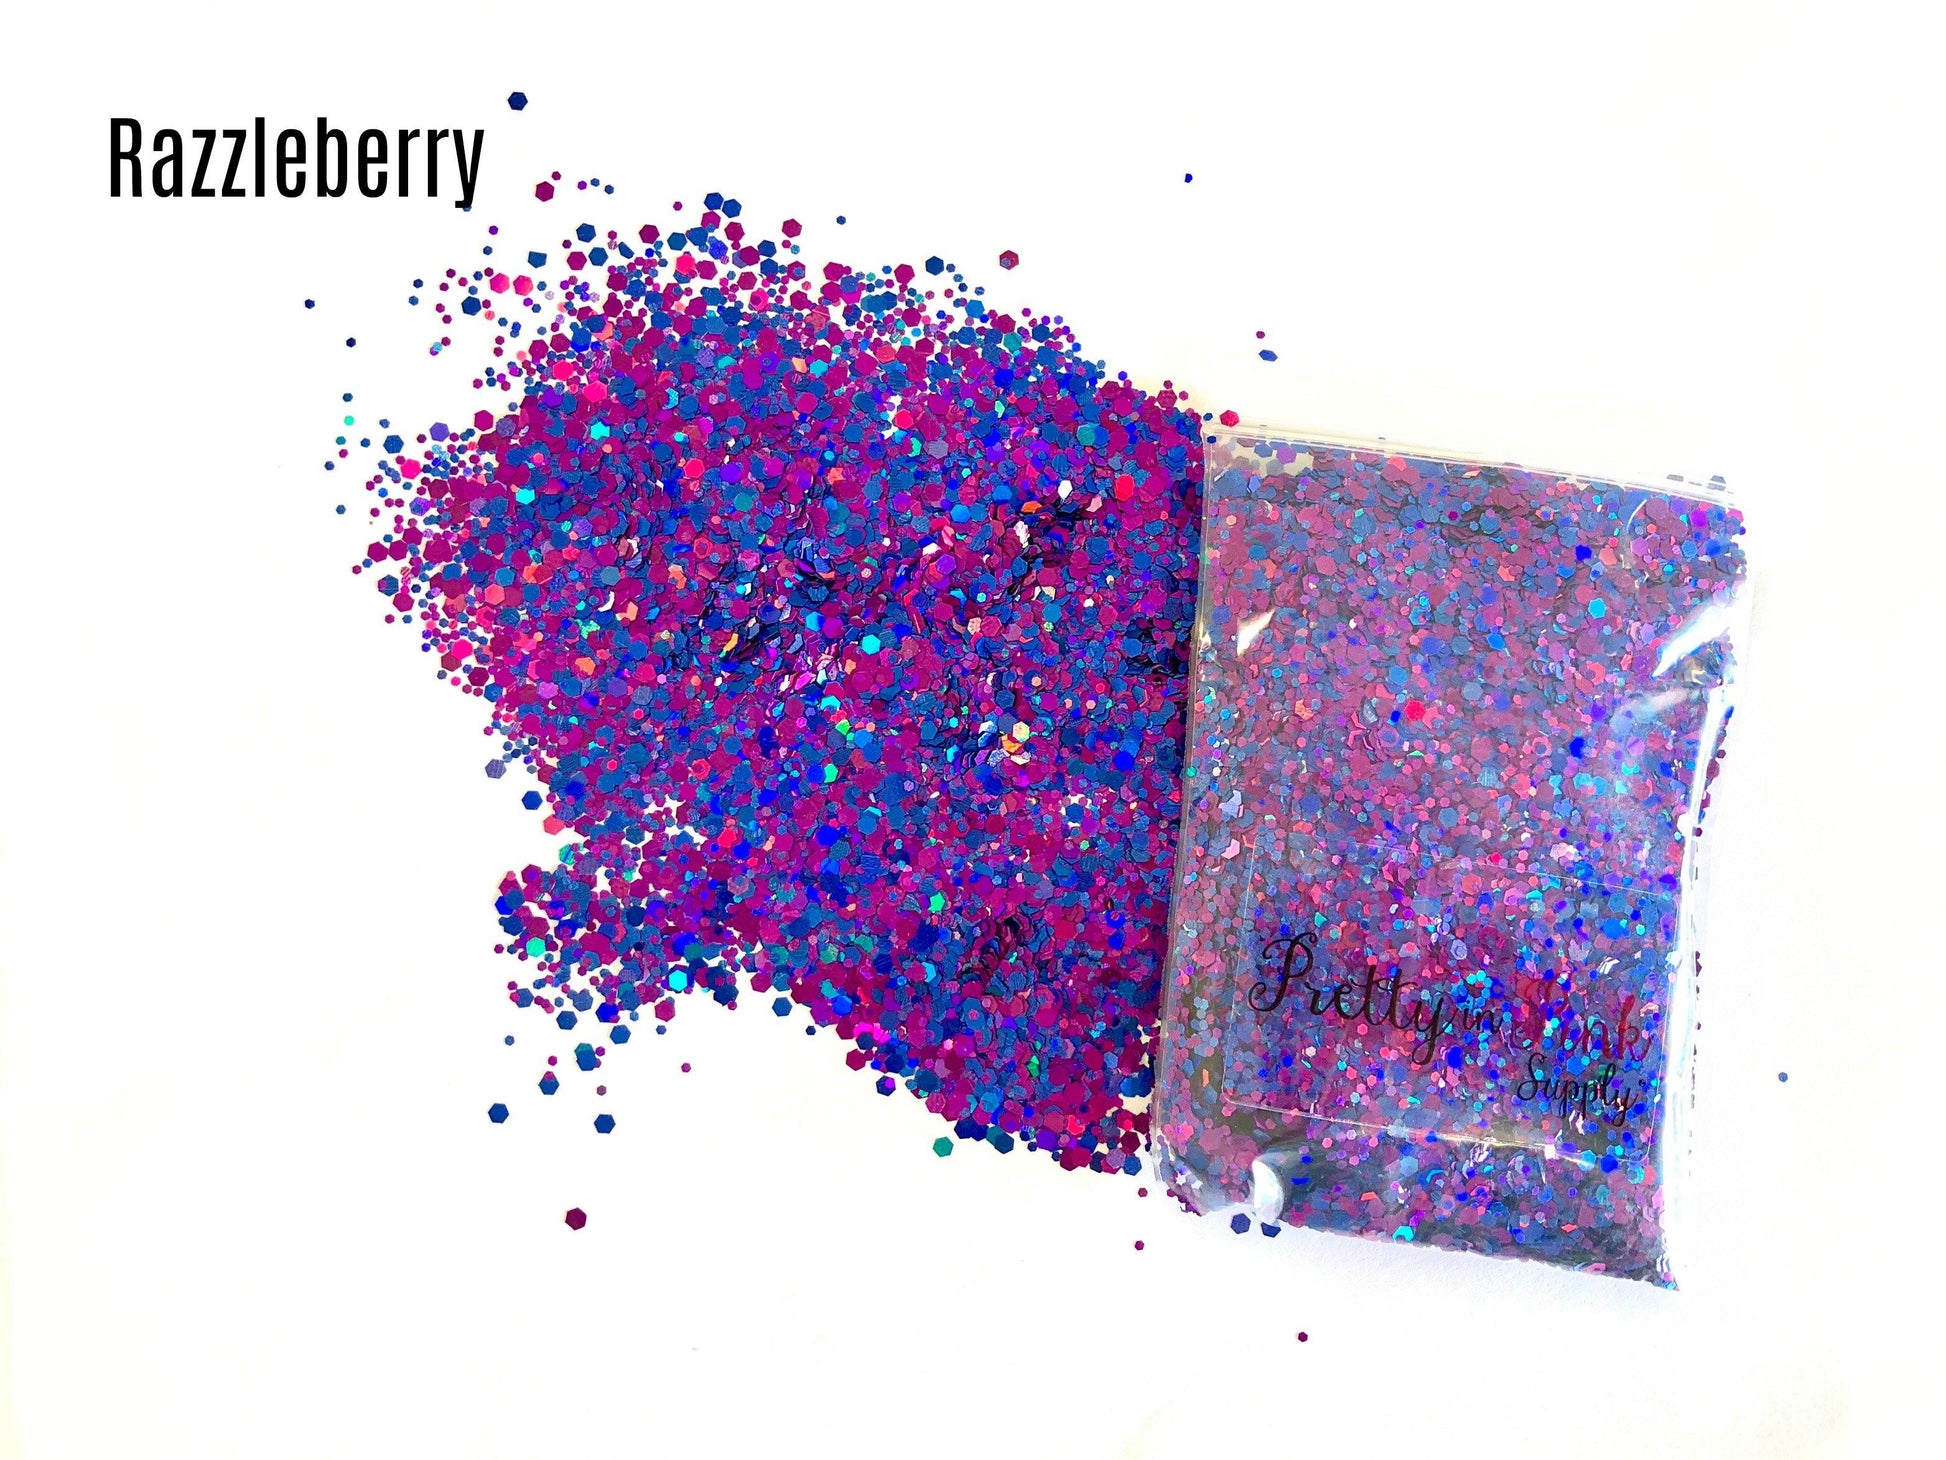 Razzleberry Confetti Loose Glitter - Pretty in Pink Supply